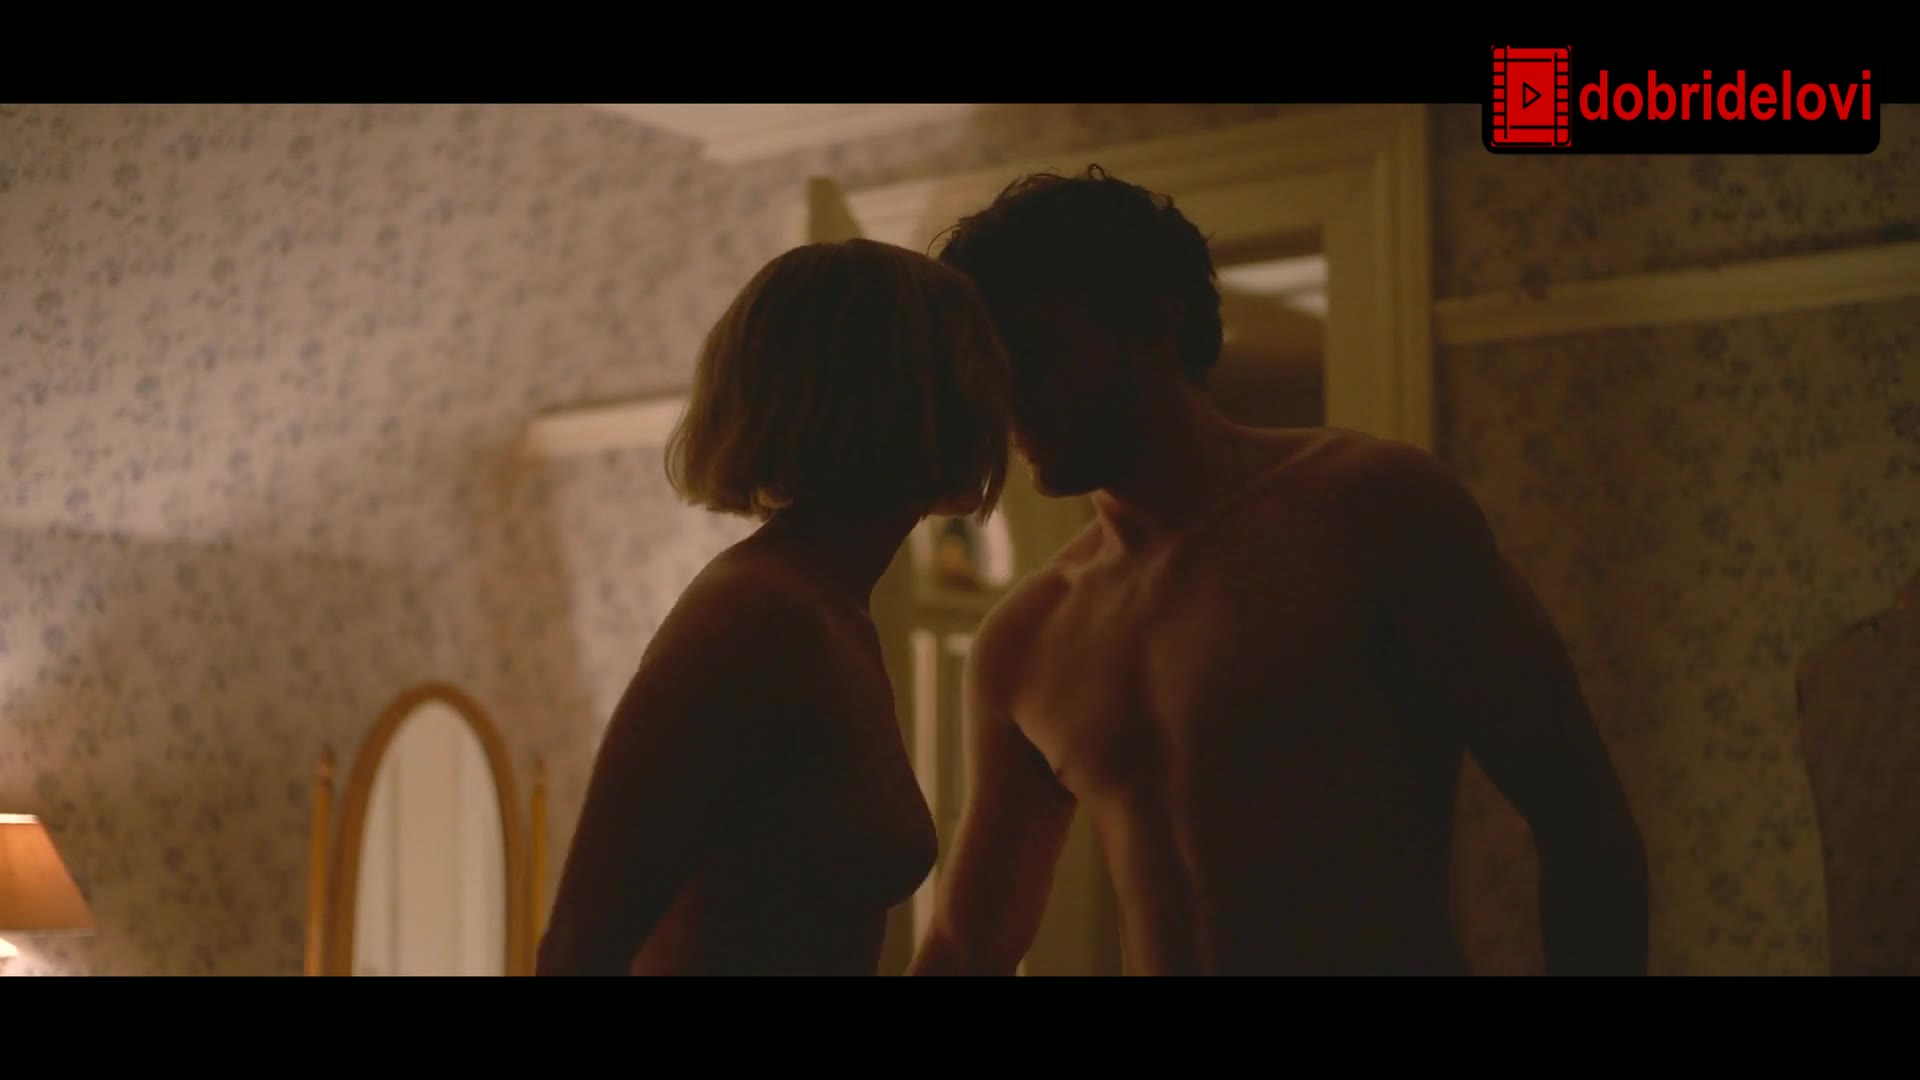 Watch Saoirse Ronan nude scene from Foe video